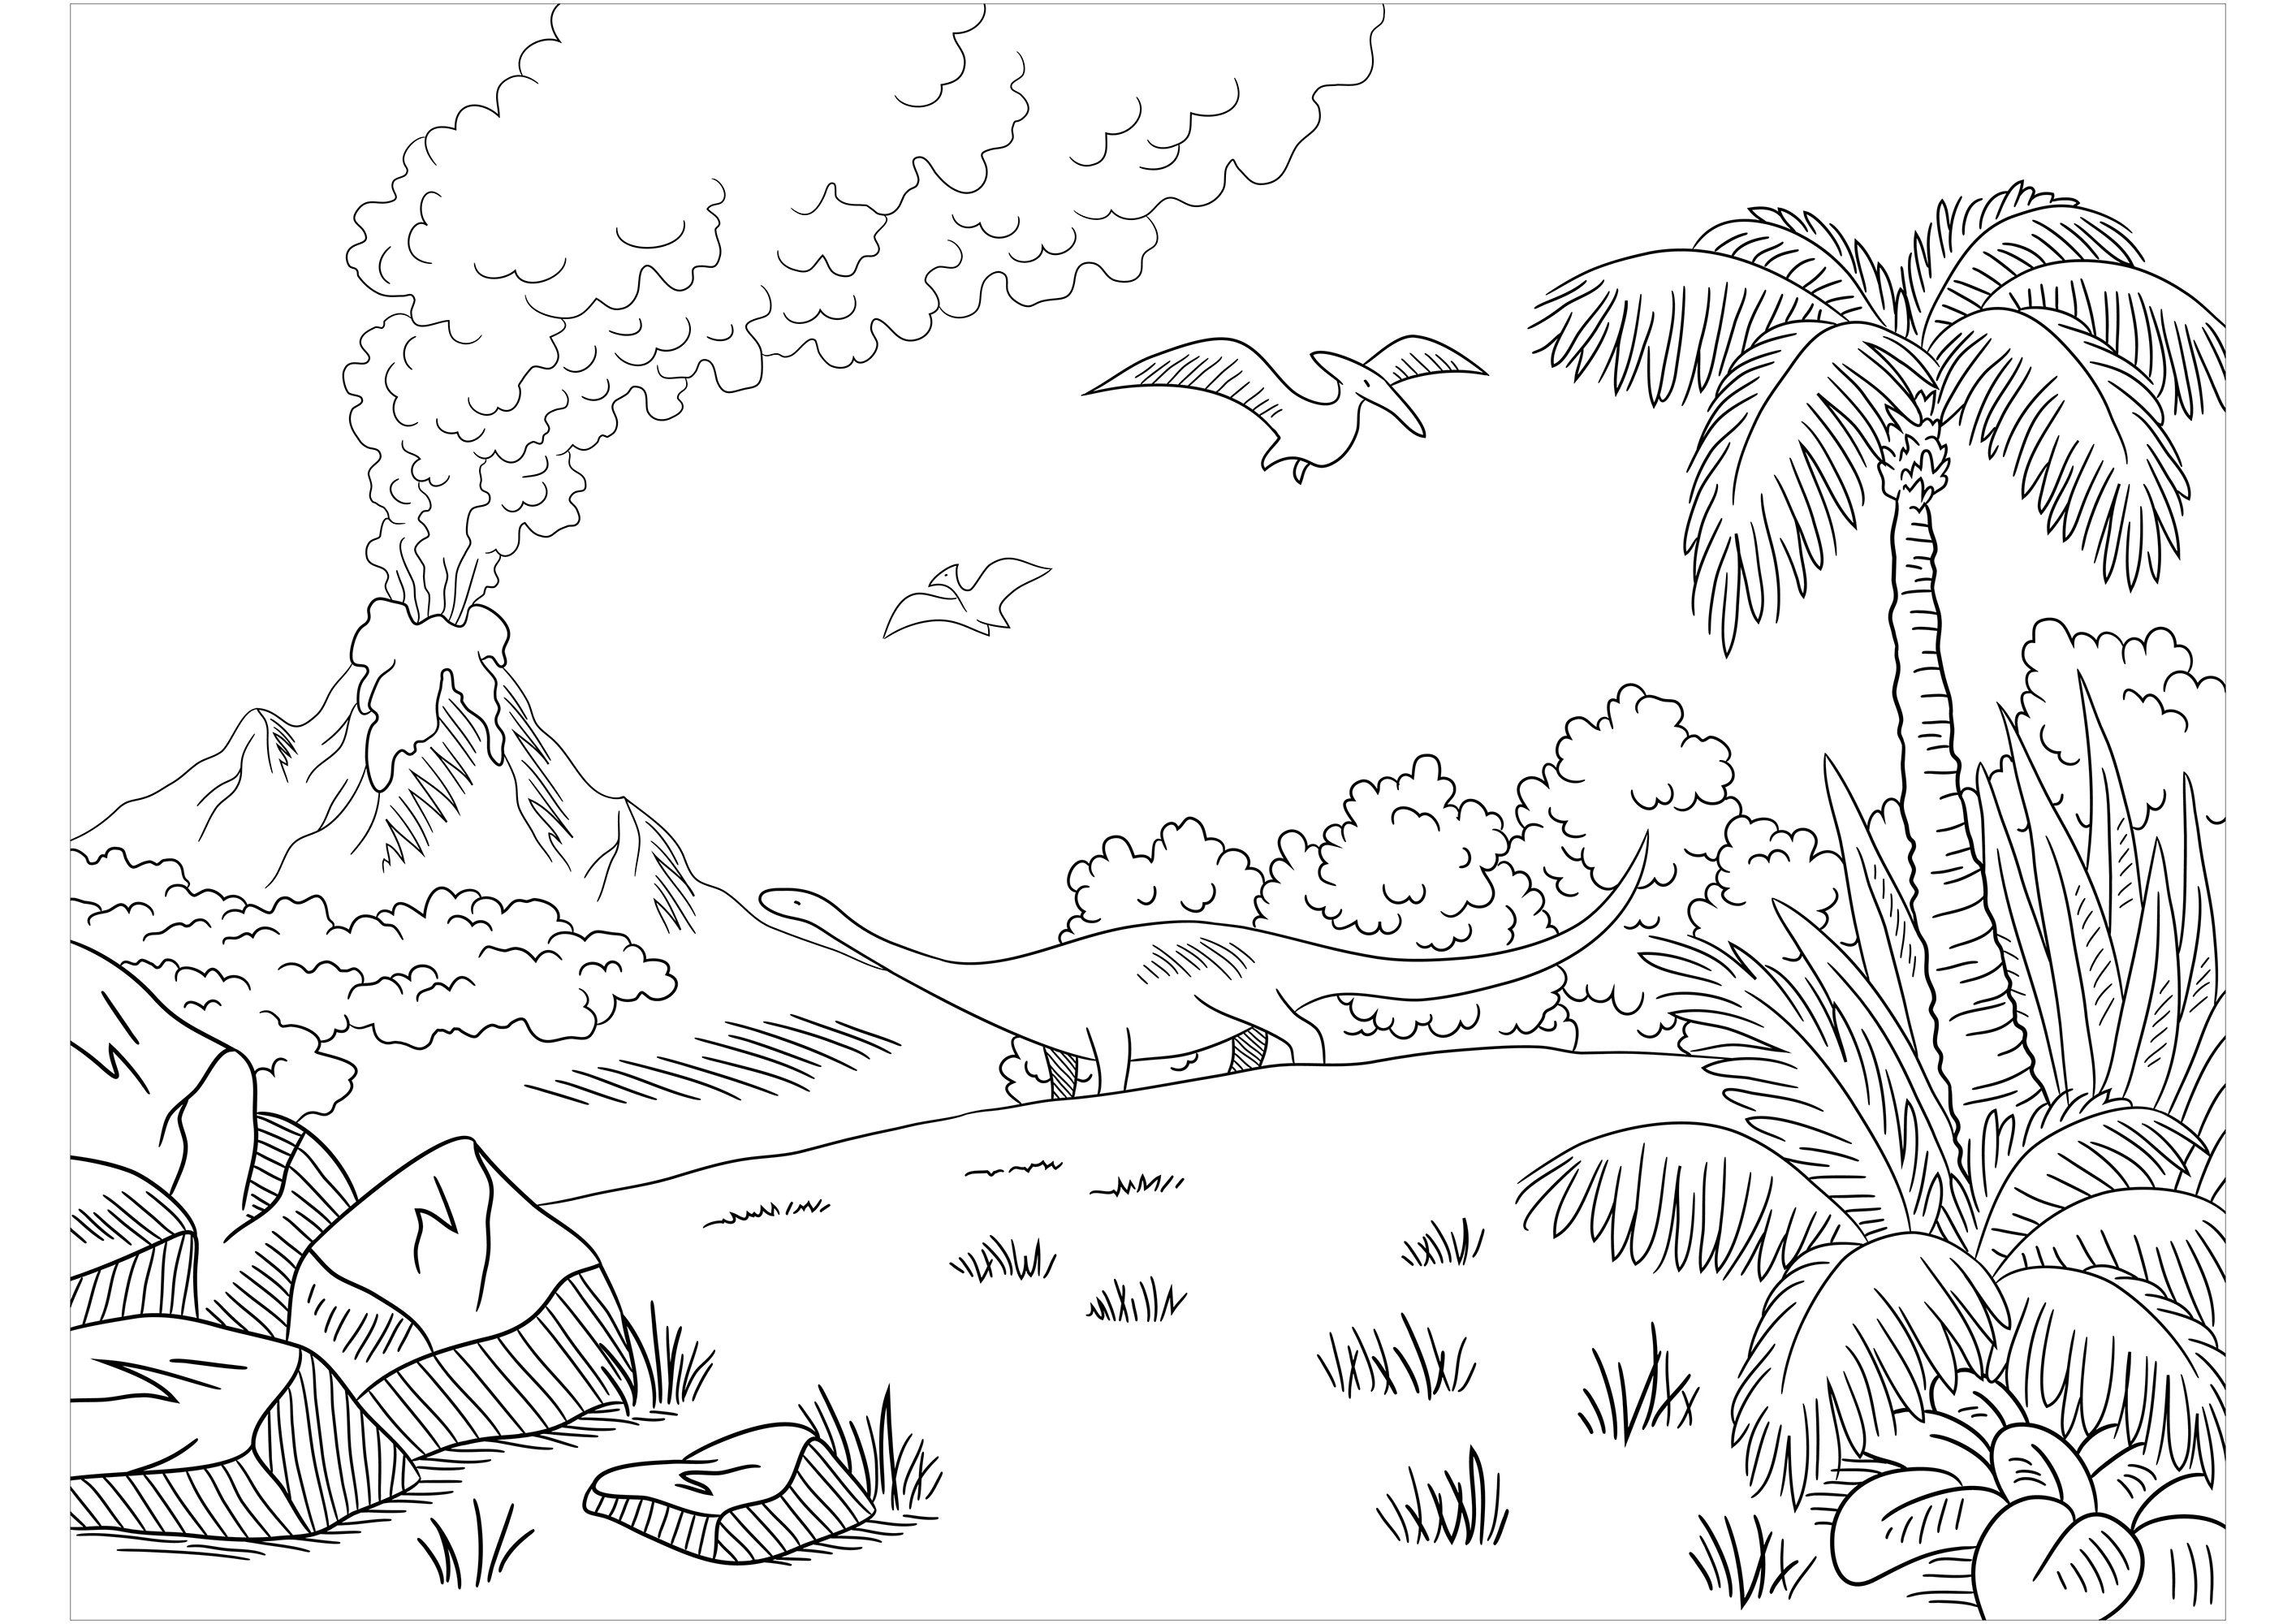 Diplodocus e Velociraptor, fugindo de um vulcão em erupção